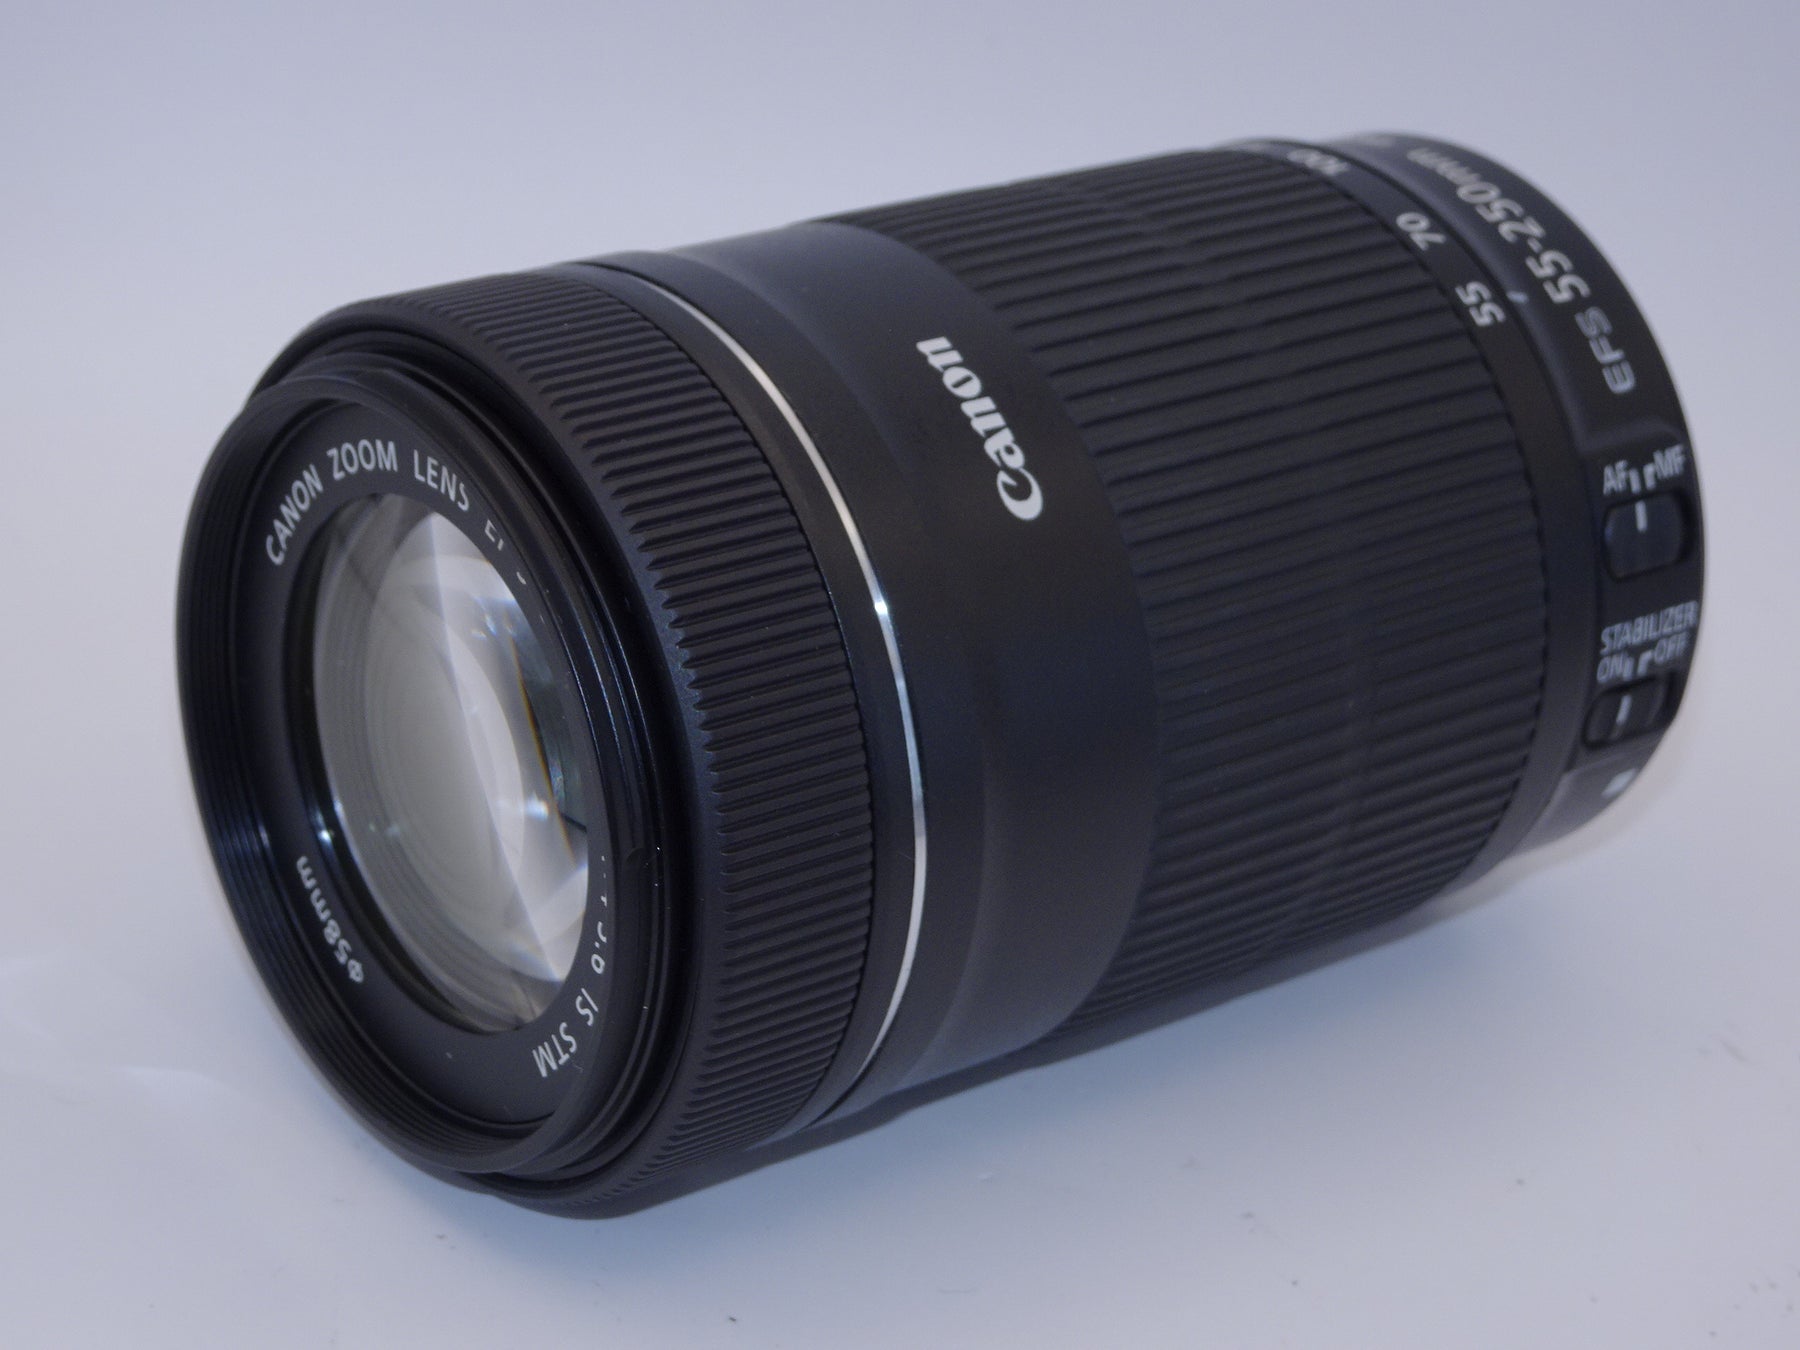 Canon 望遠ズームレンズ EF-S55-250mm